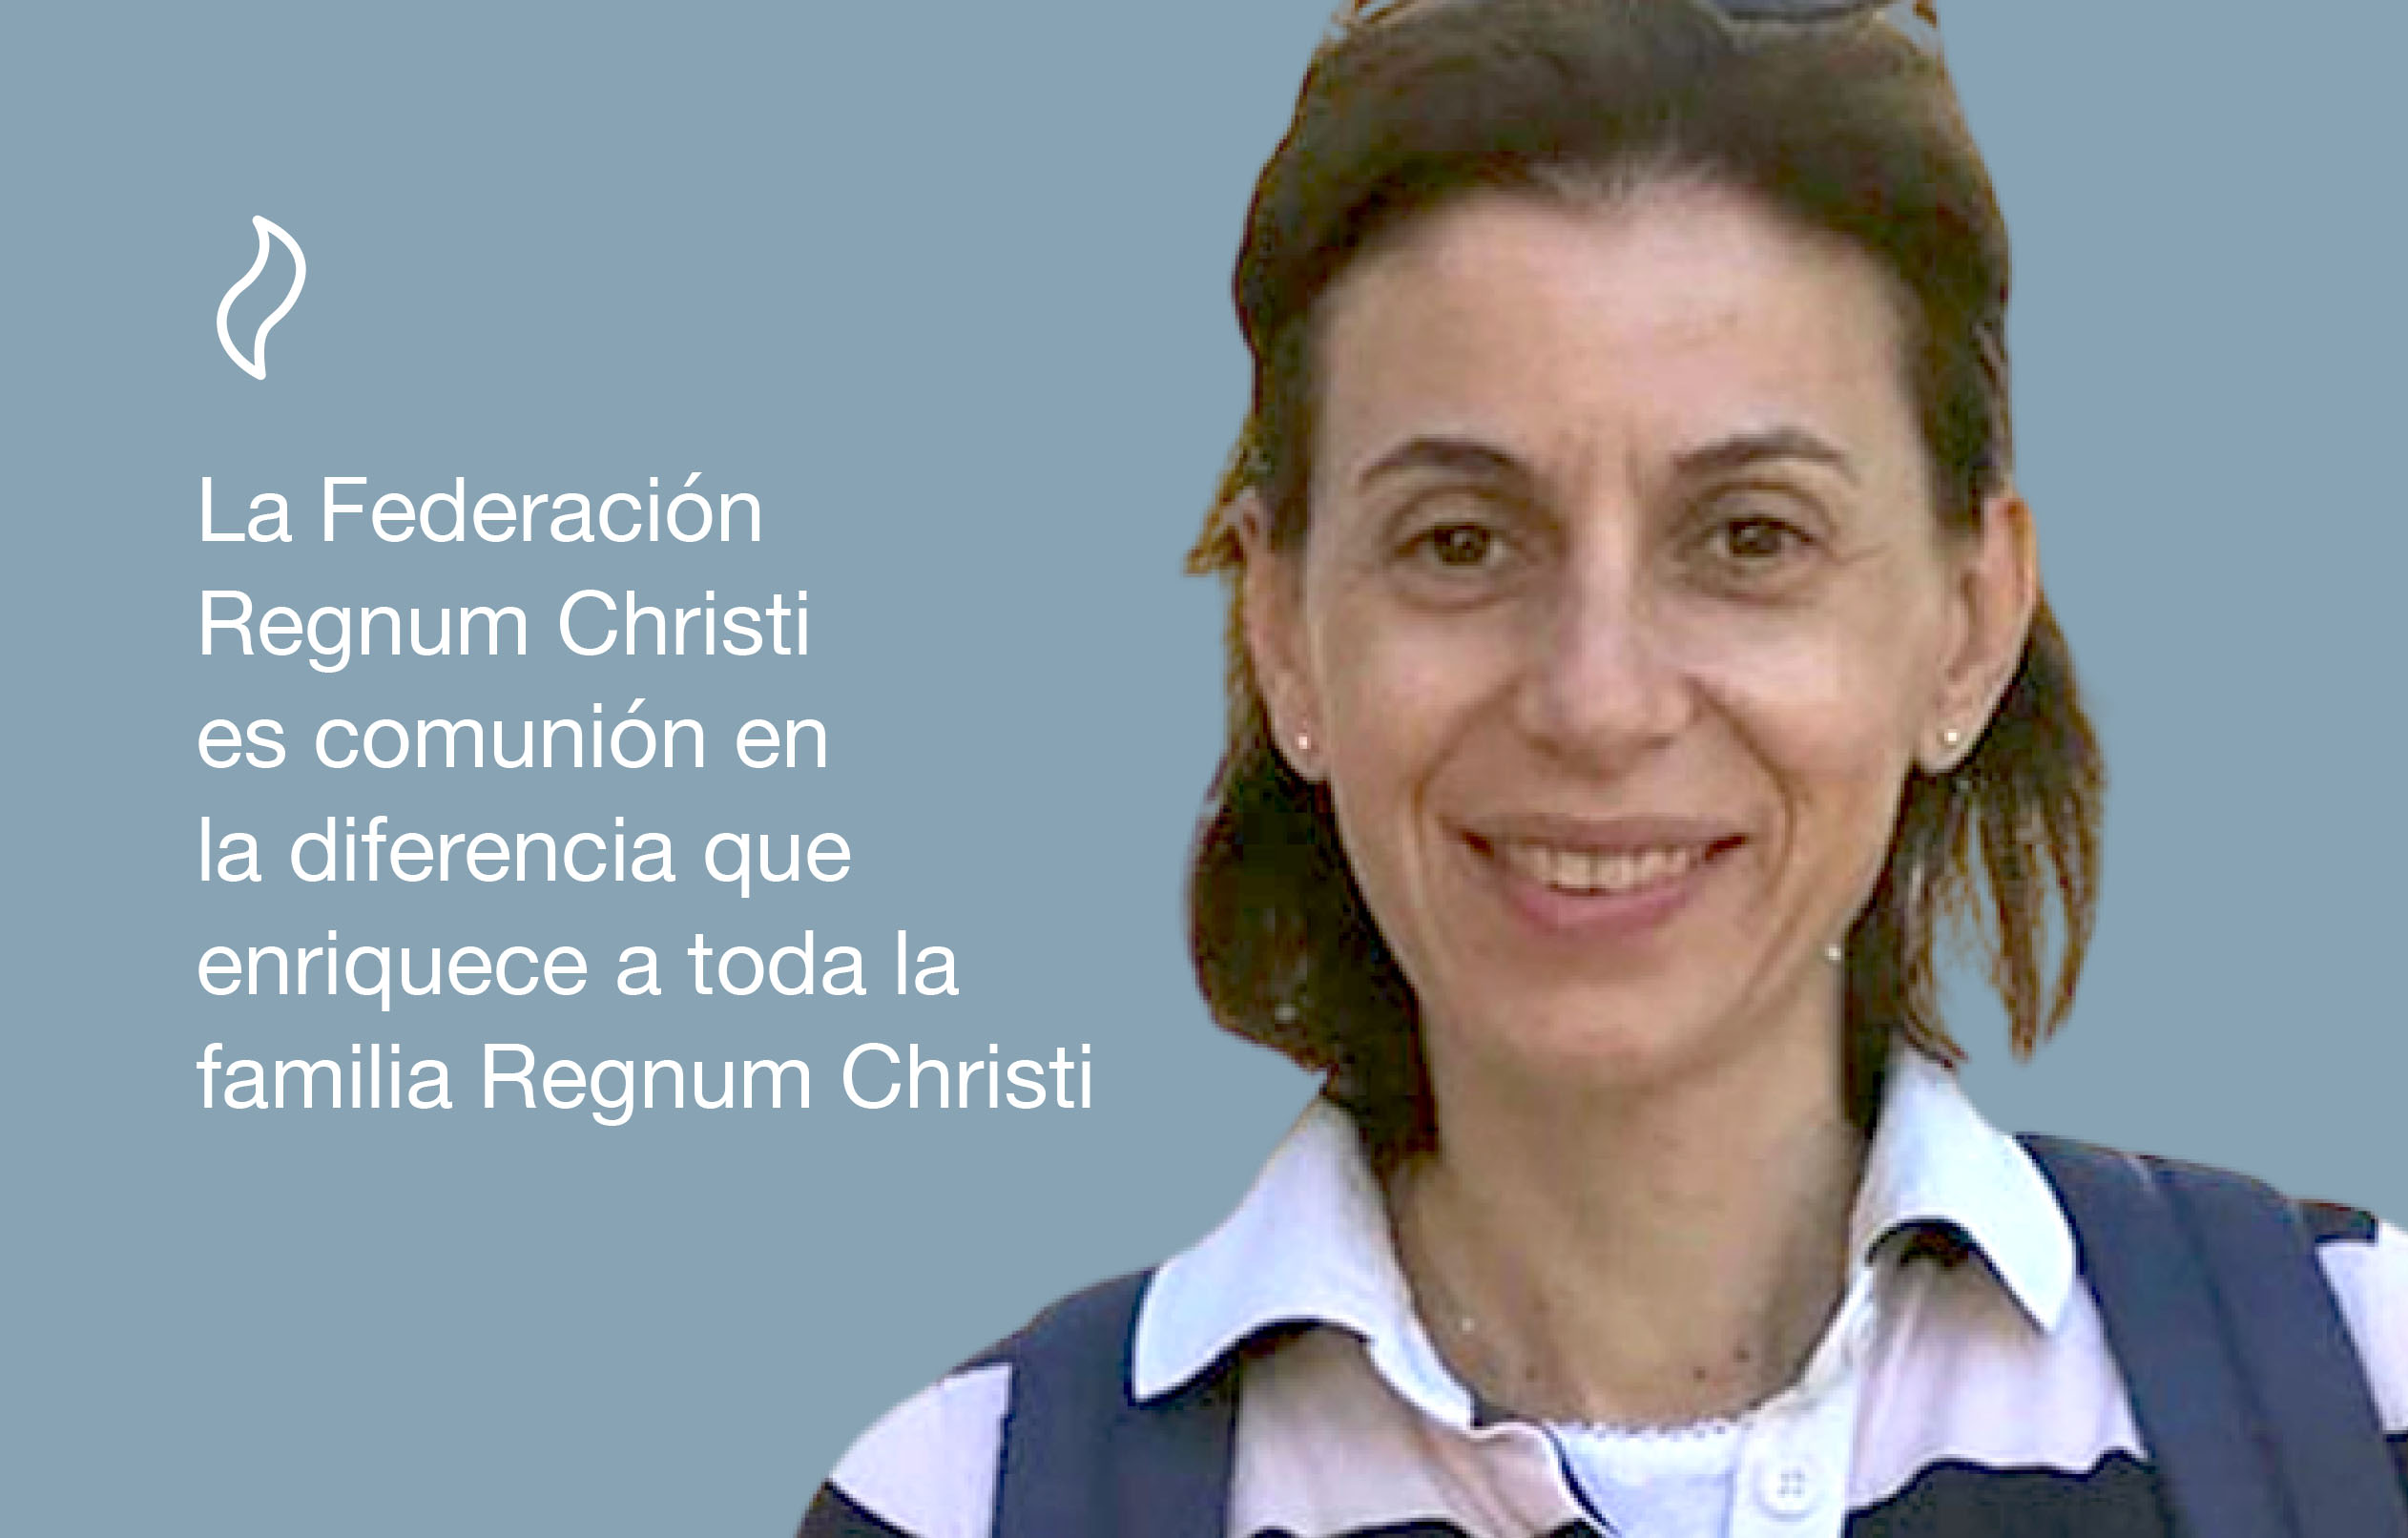 Paloma Villena, laica del Regnum Christi y miembro que asiste al Colegio directivo territorial